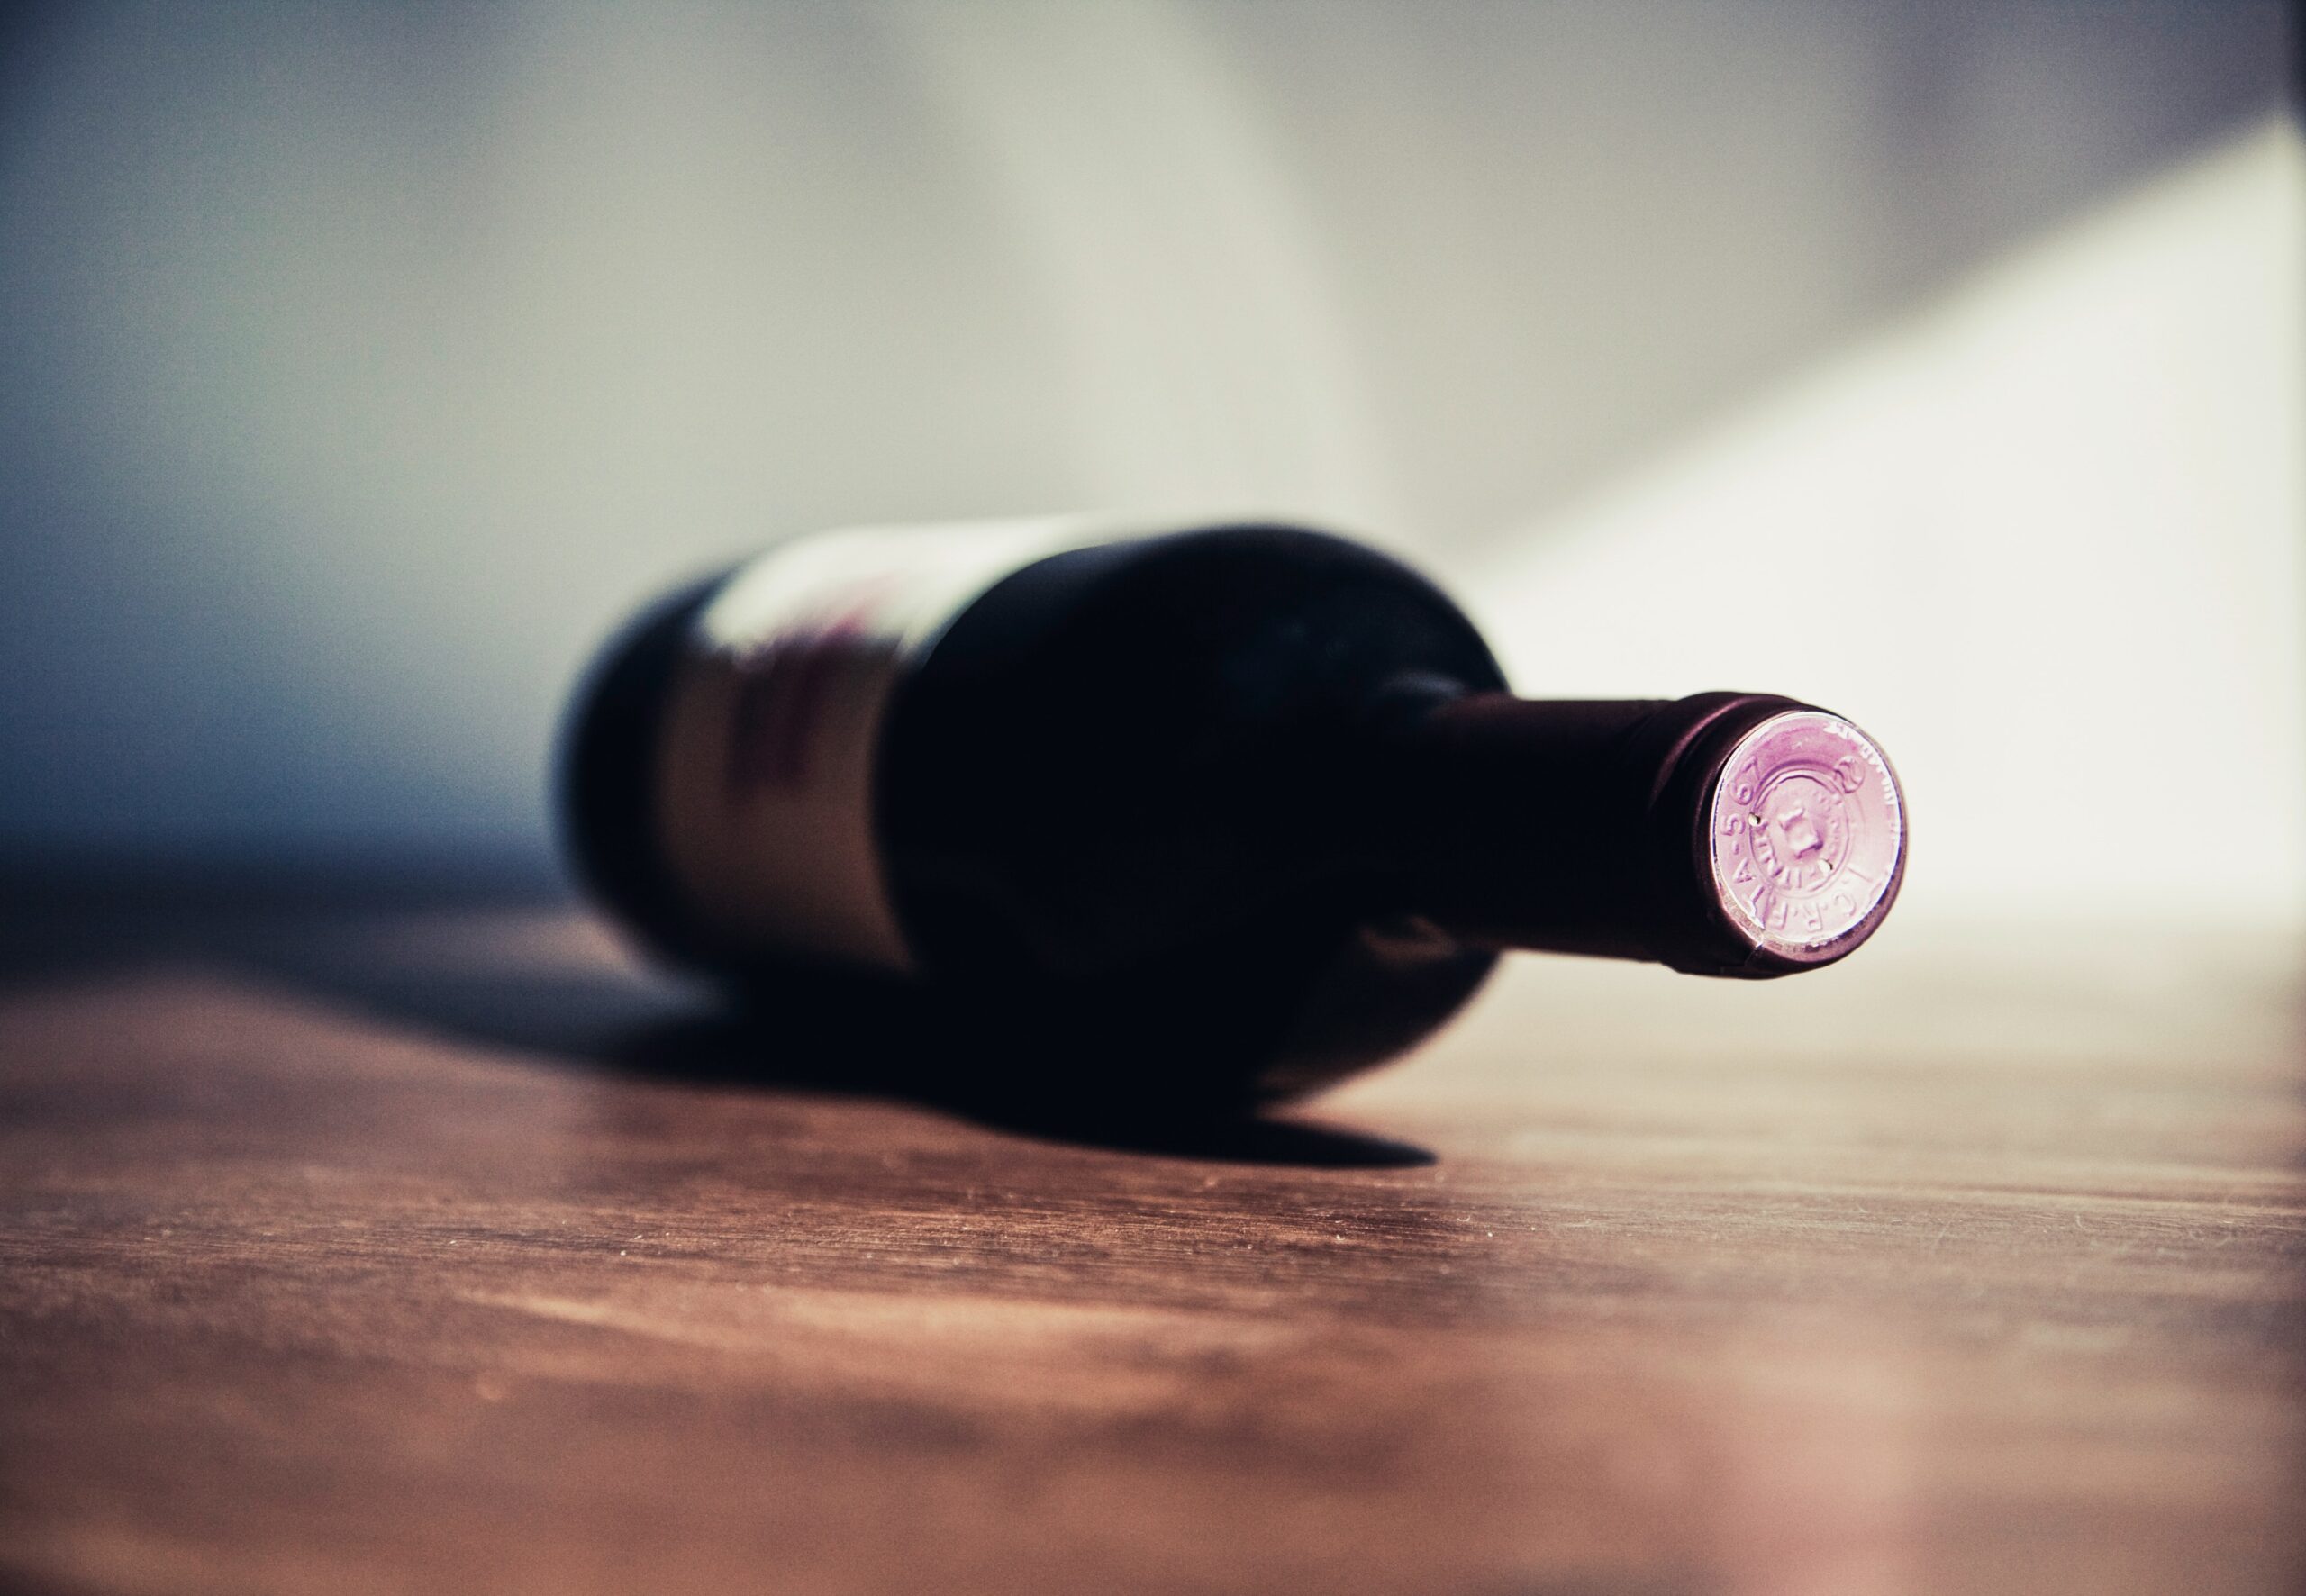 Parlamento europeu inicia votação sobre rótulo de vinho com aviso estilo dos maços de cigarro